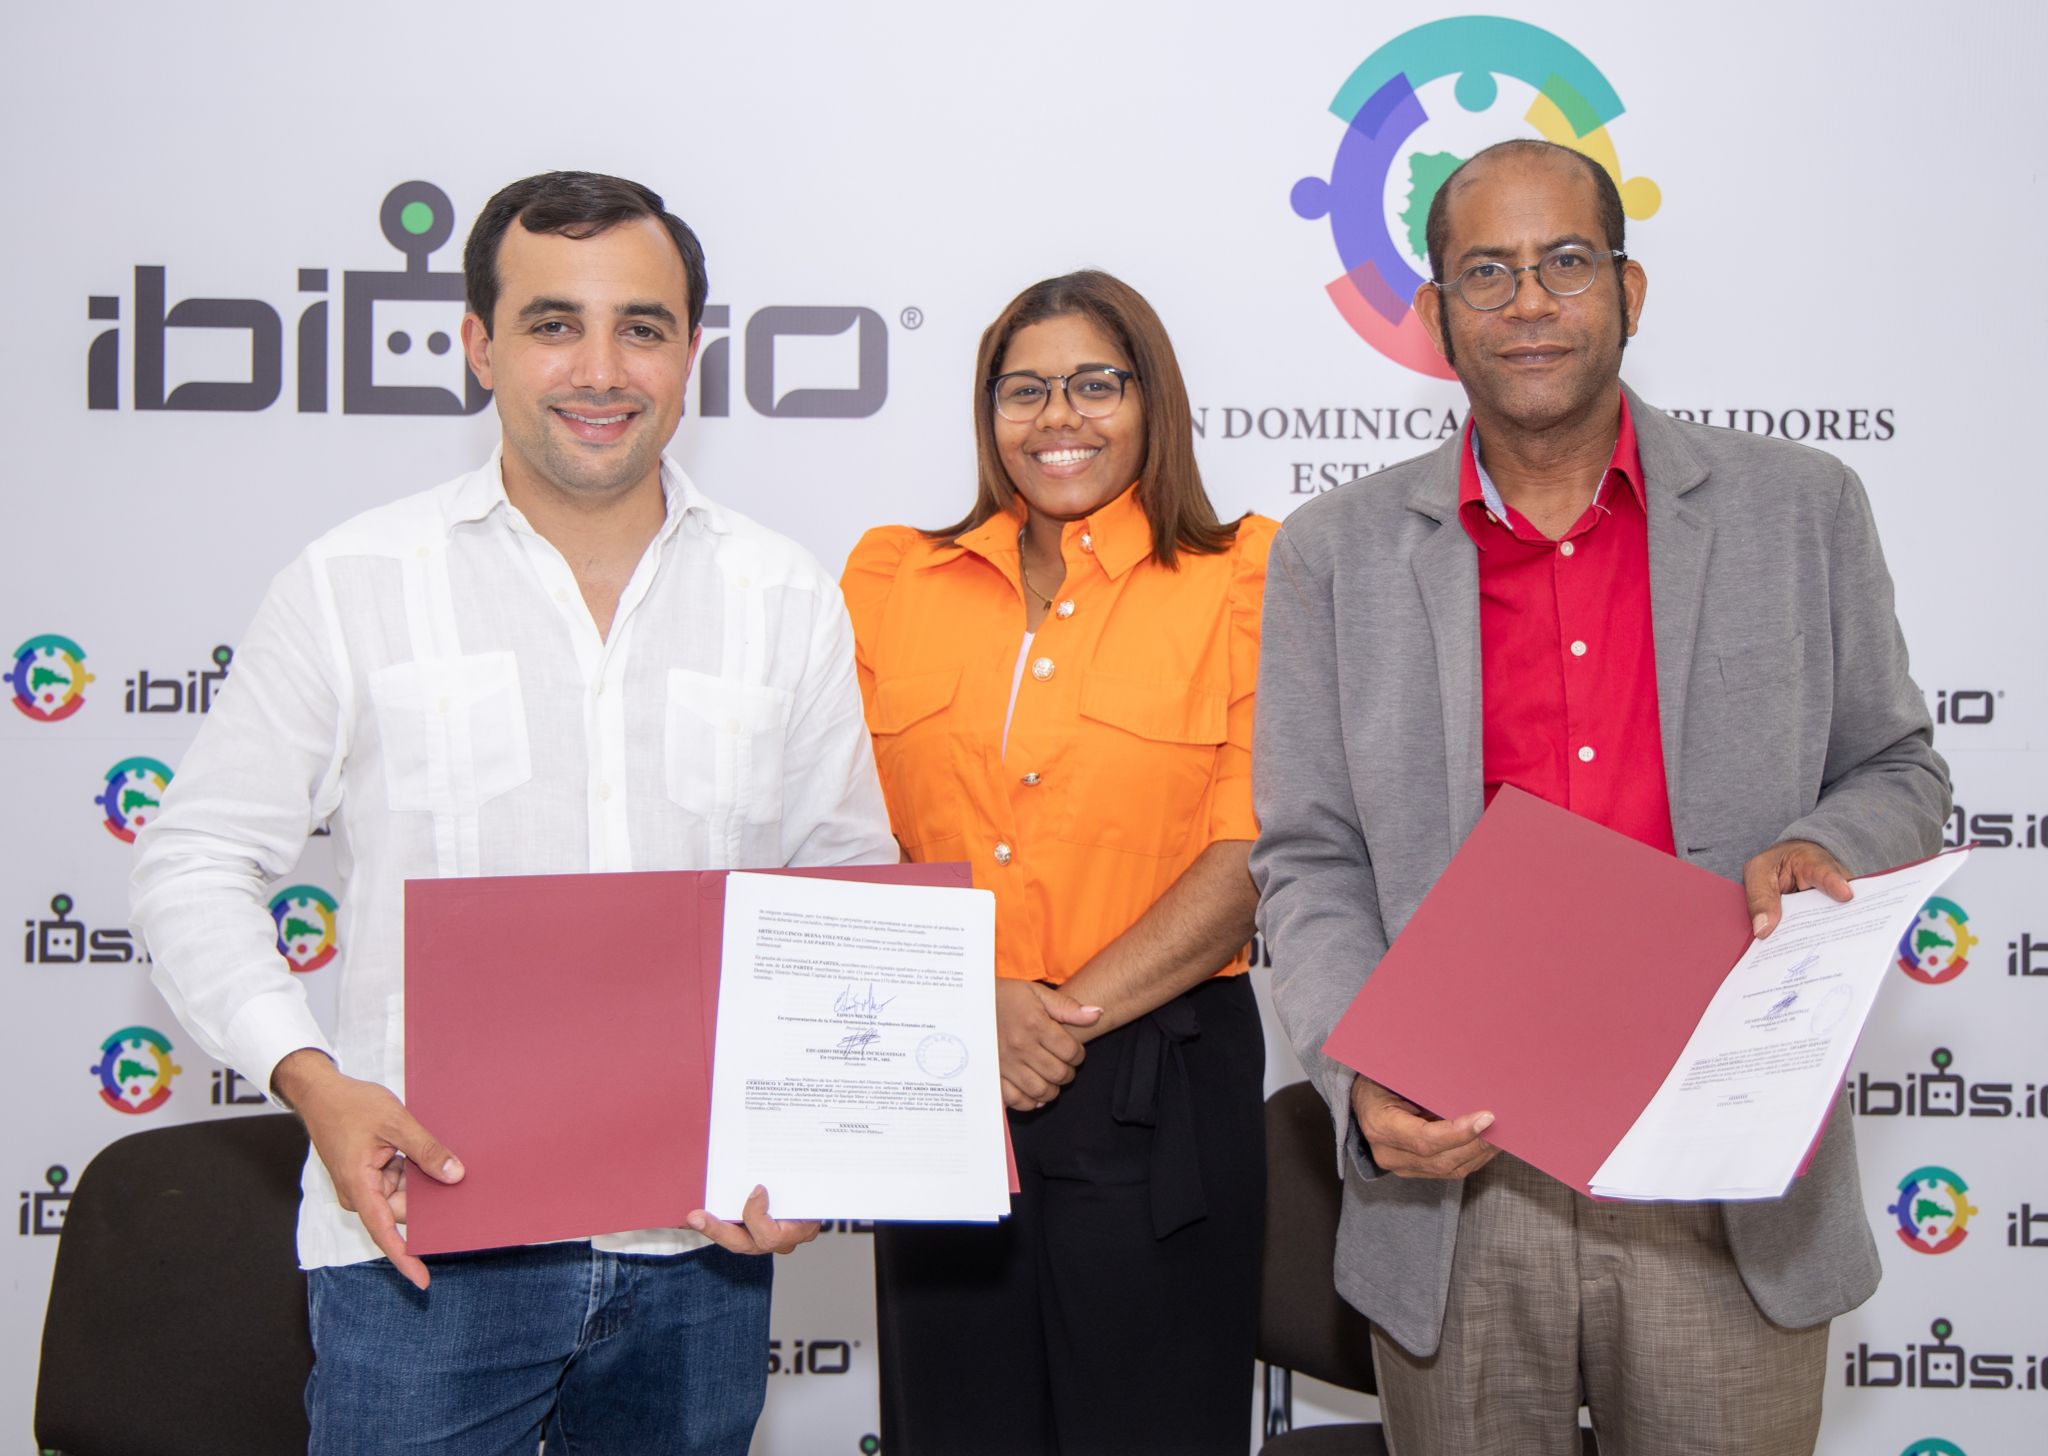 Plataforma para licitaciones "ibiDs.io" y Unión Dominicana de Suplidores Estatales firman convenio de colaboración